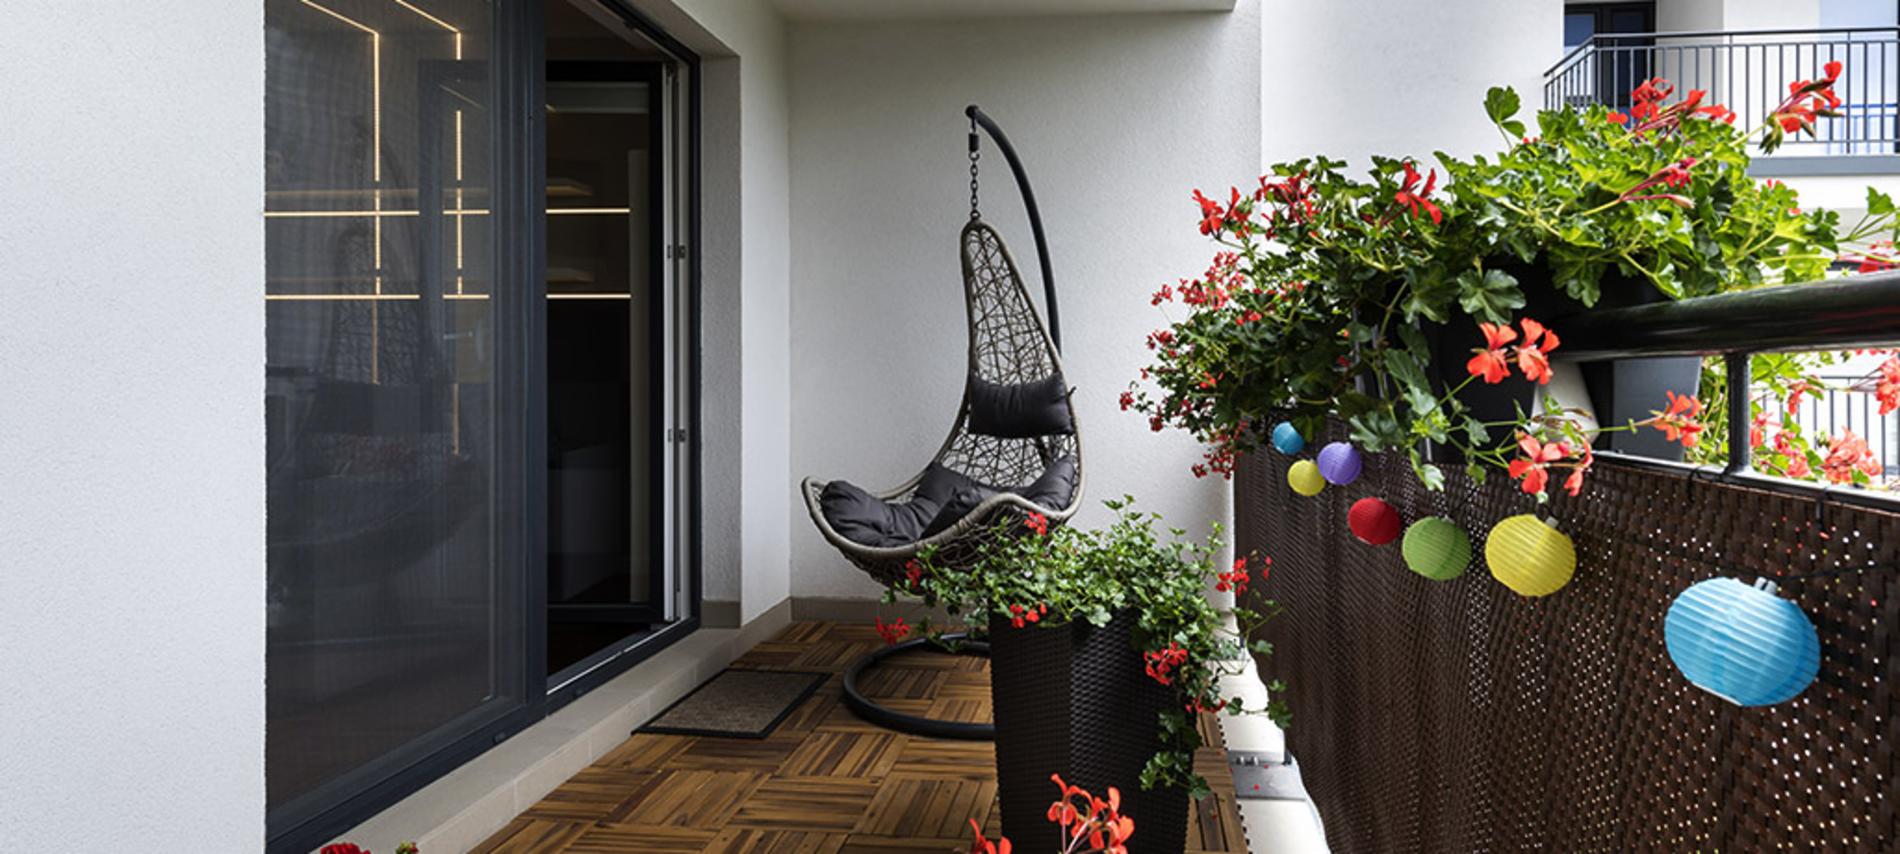 Un truco para tu casa: Ideas para decorar la terraza o balcón